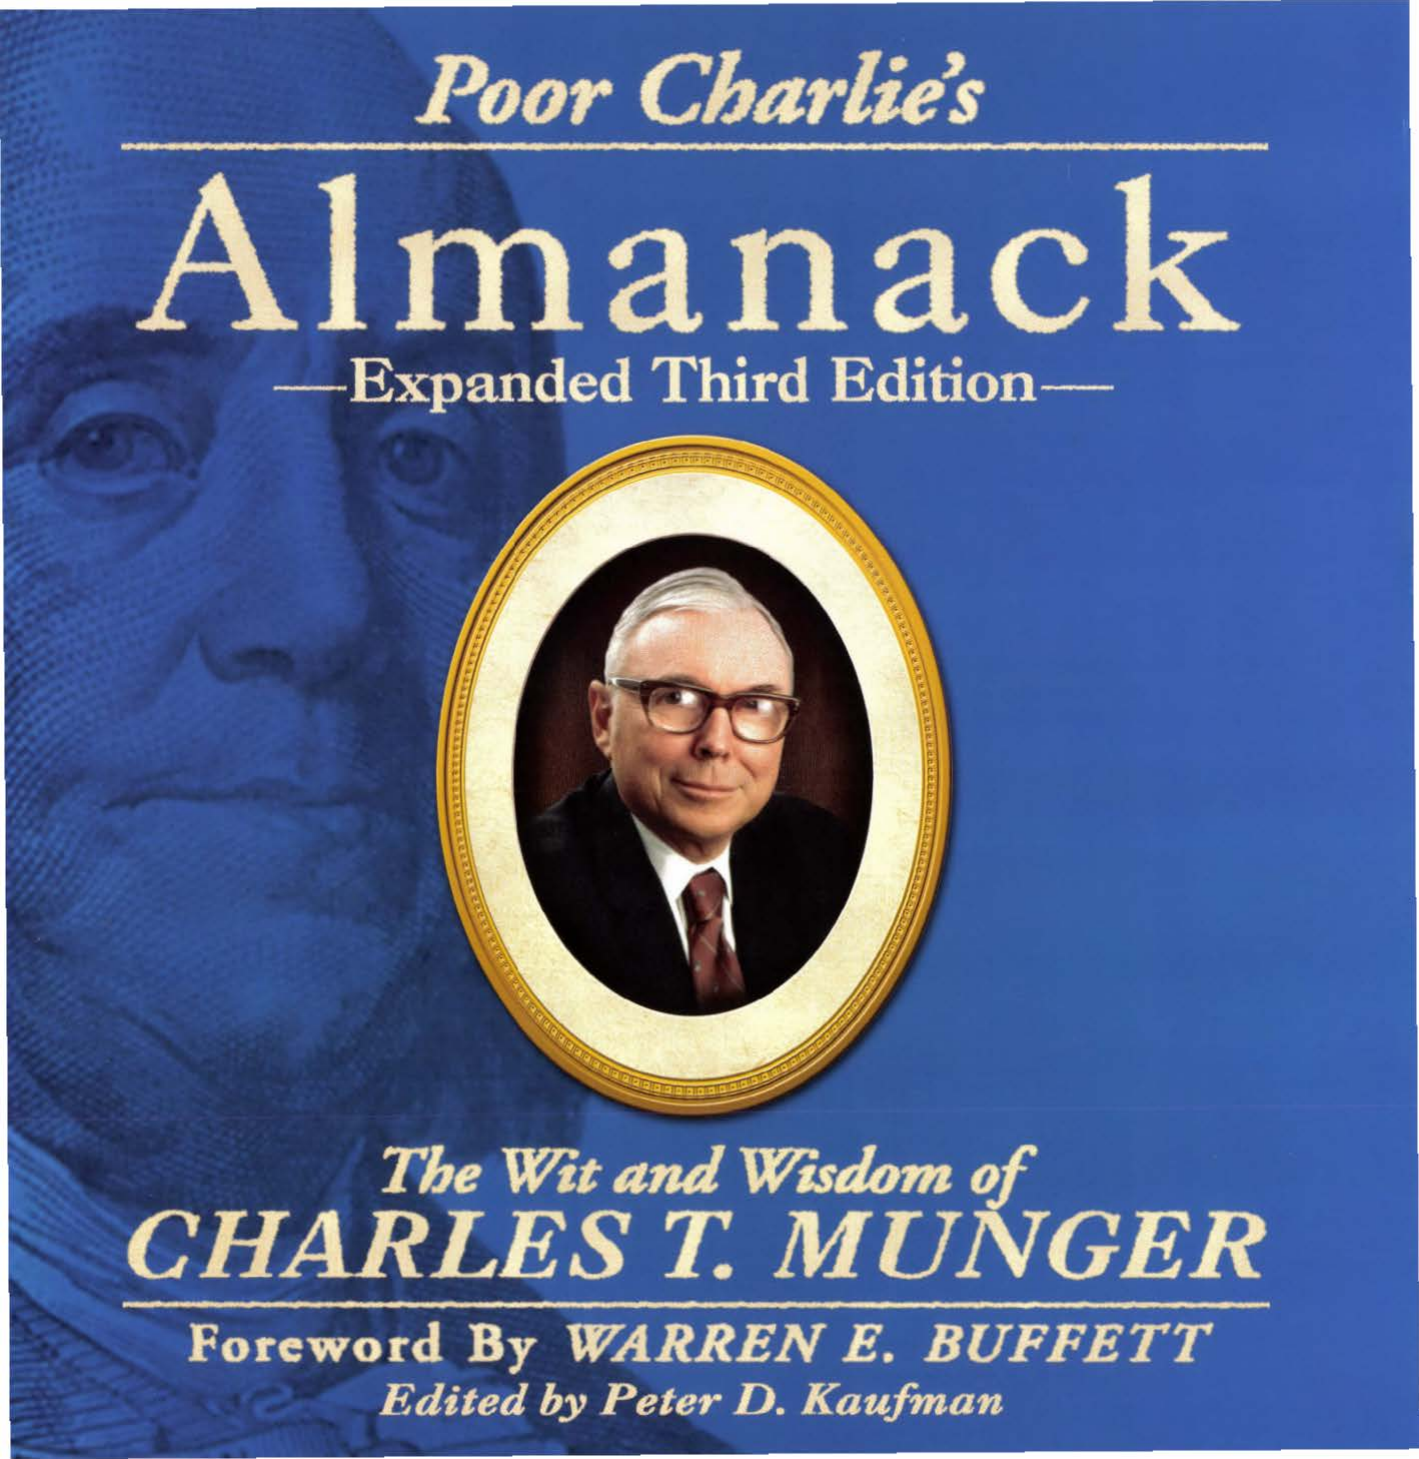 Poor Charlies Almanack by Charles T